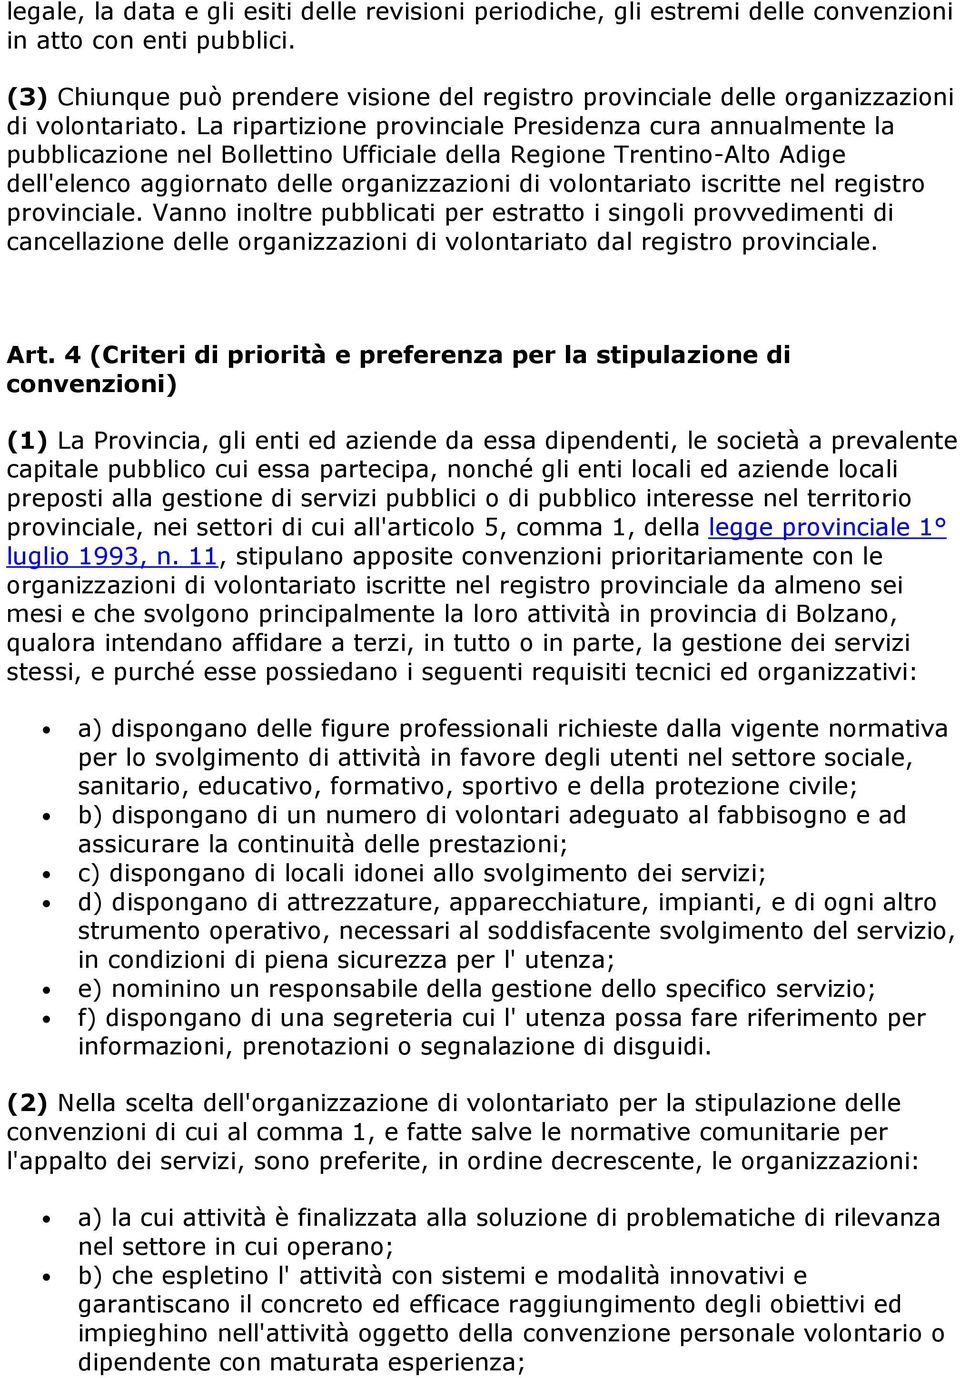 La ripartizione provinciale Presidenza cura annualmente la pubblicazione nel Bollettino Ufficiale della Regione Trentino-Alto Adige dell'elenco aggiornato delle organizzazioni di volontariato